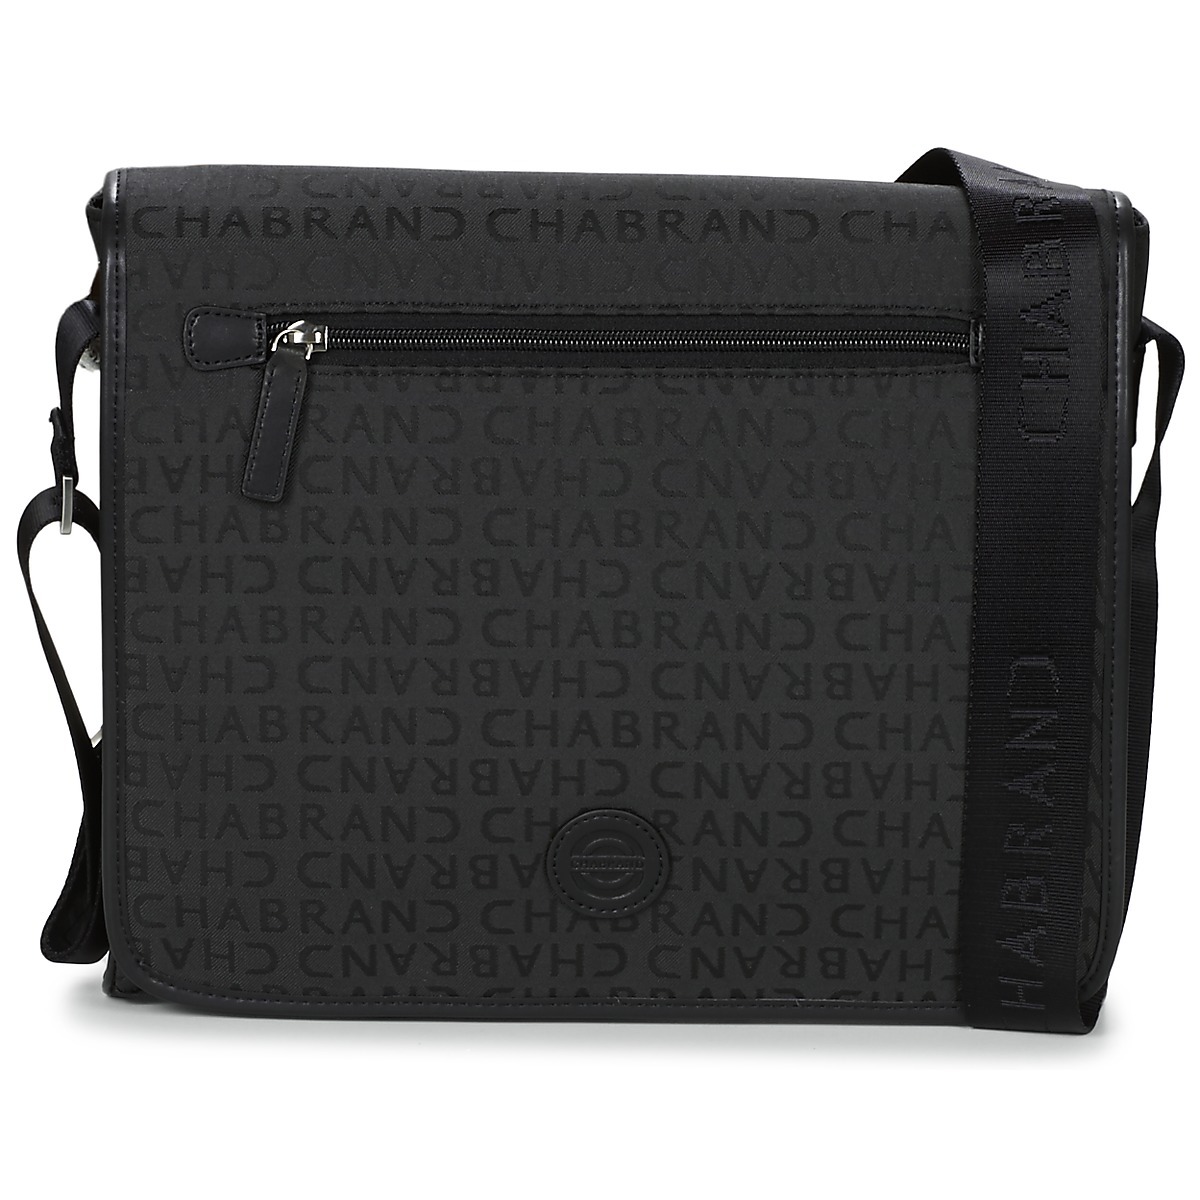 Chabrand - Shoulder Bag Black for Men by Spartoo GOOFASH